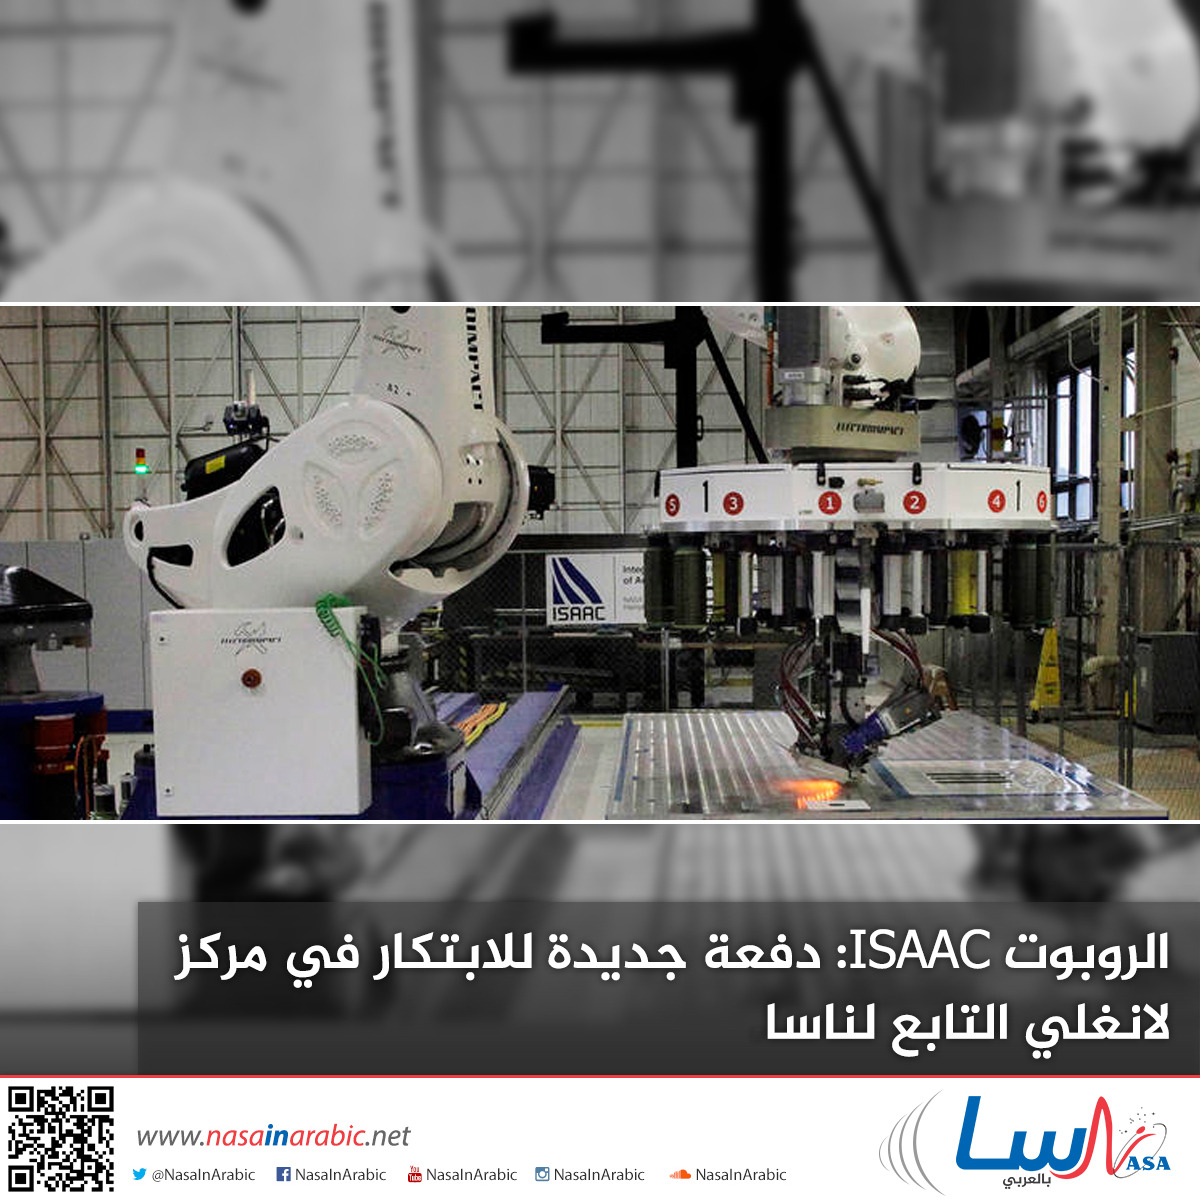 الروبوت ISAAC: دفعة جديدة للابتكار في مركز لانغلي التابع لناسا.